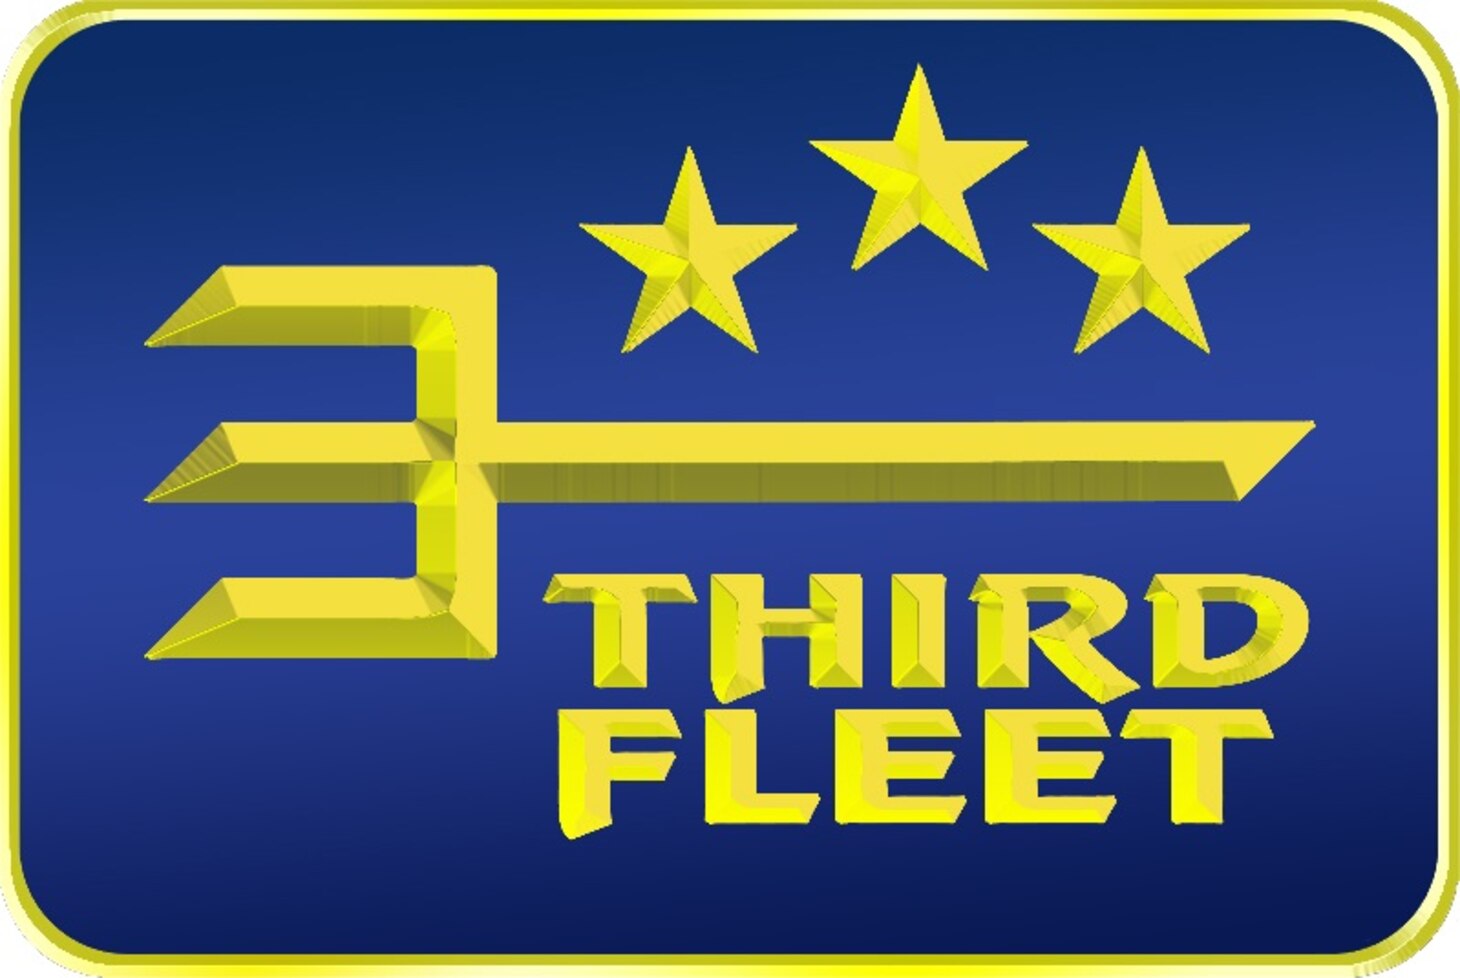 Third Fleet